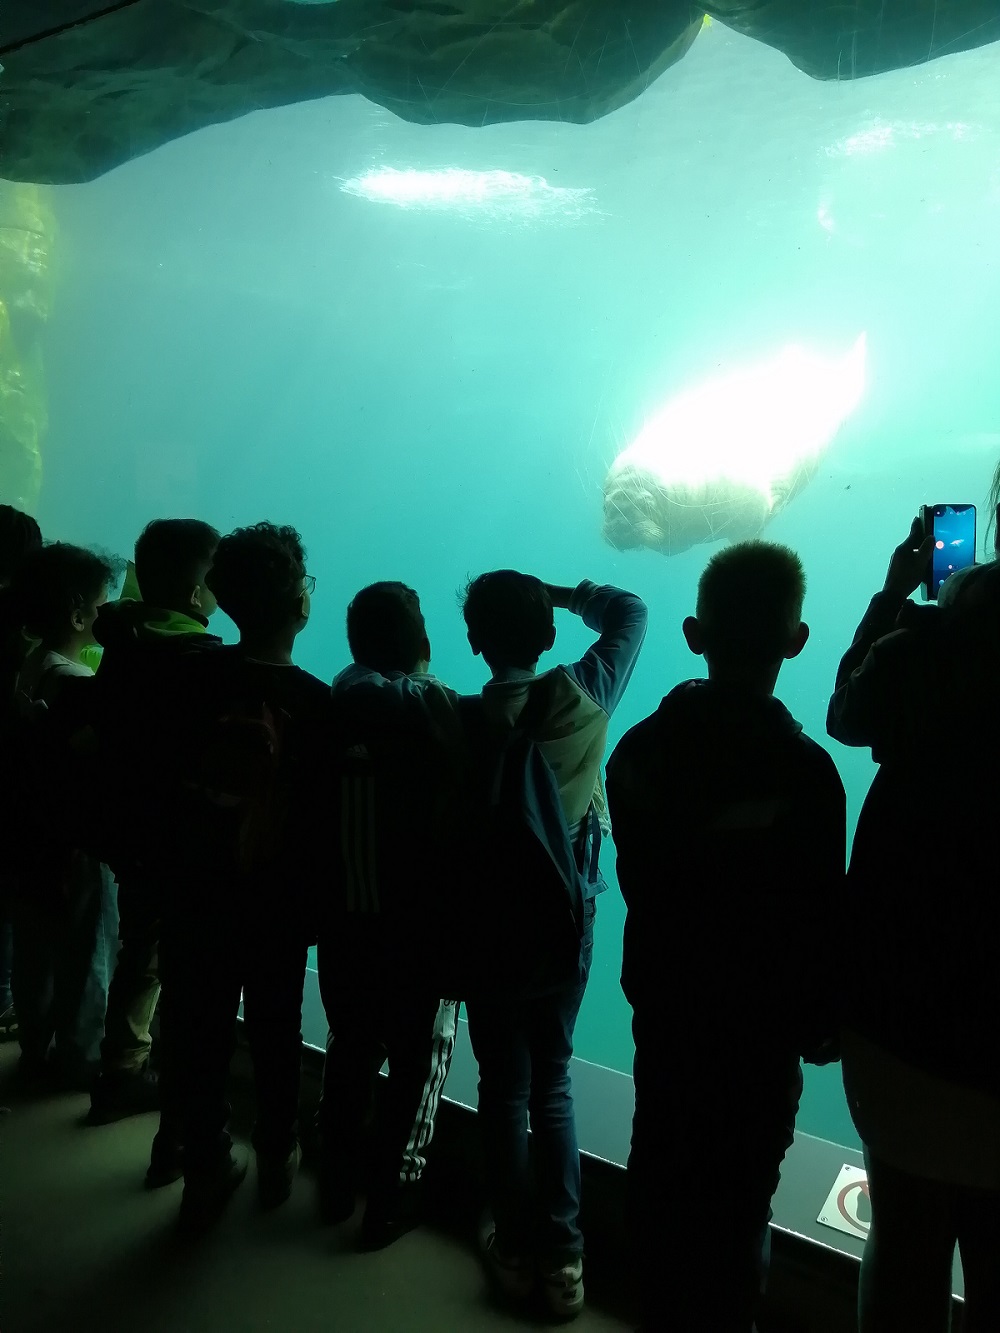 Kinder stehen vor Aquarium Wand und schauen sich ein Walross an